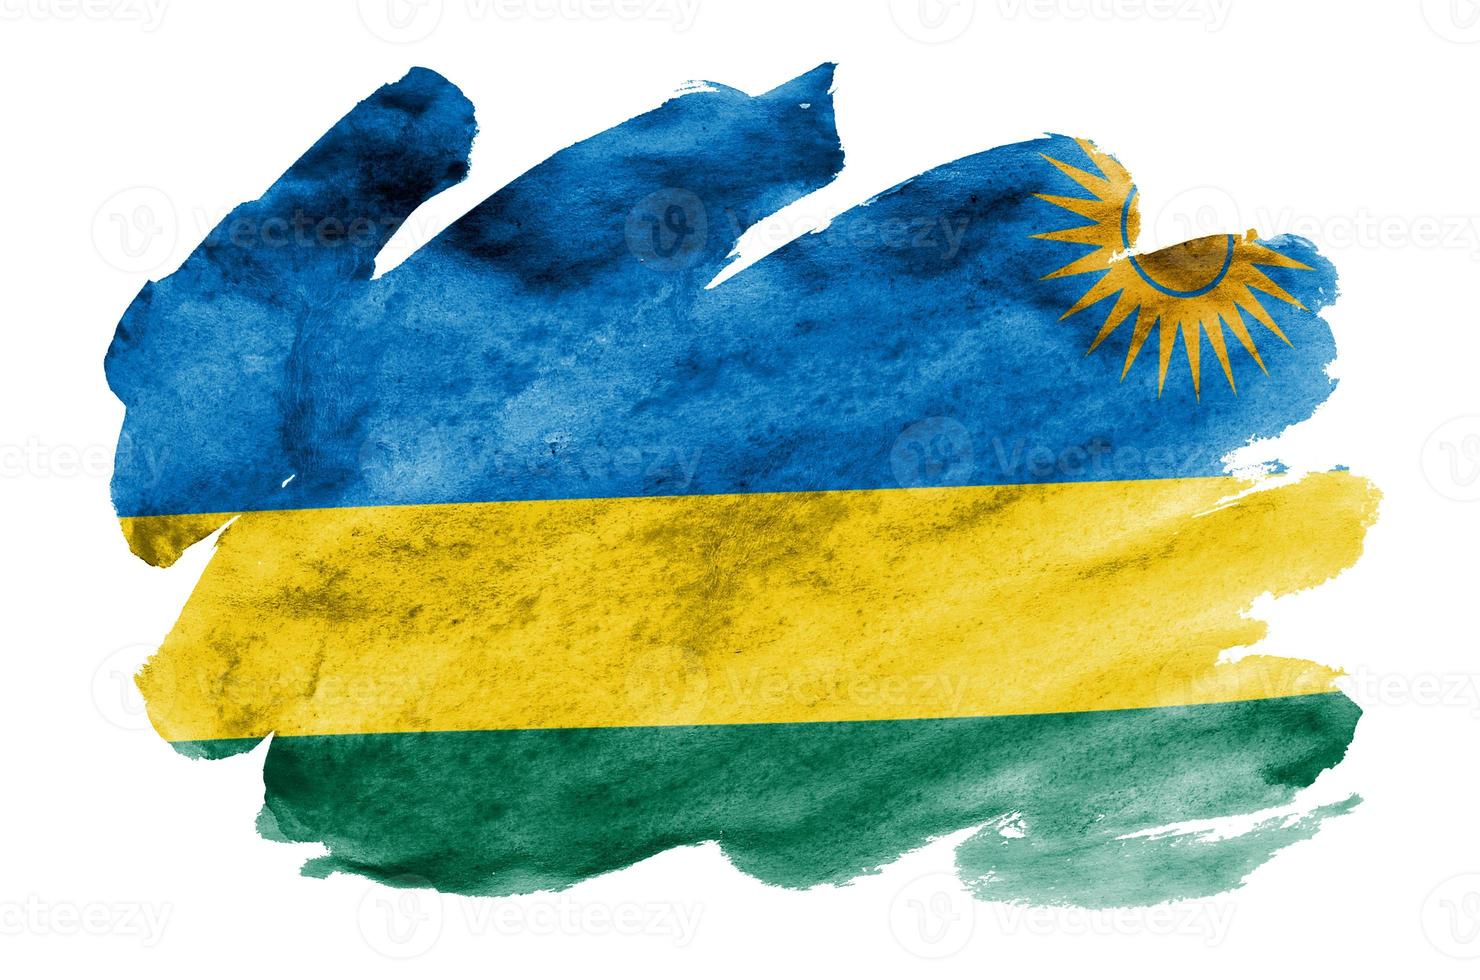 rwanda flagga är avbildad i flytande vattenfärg stil isolerat på vit bakgrund foto